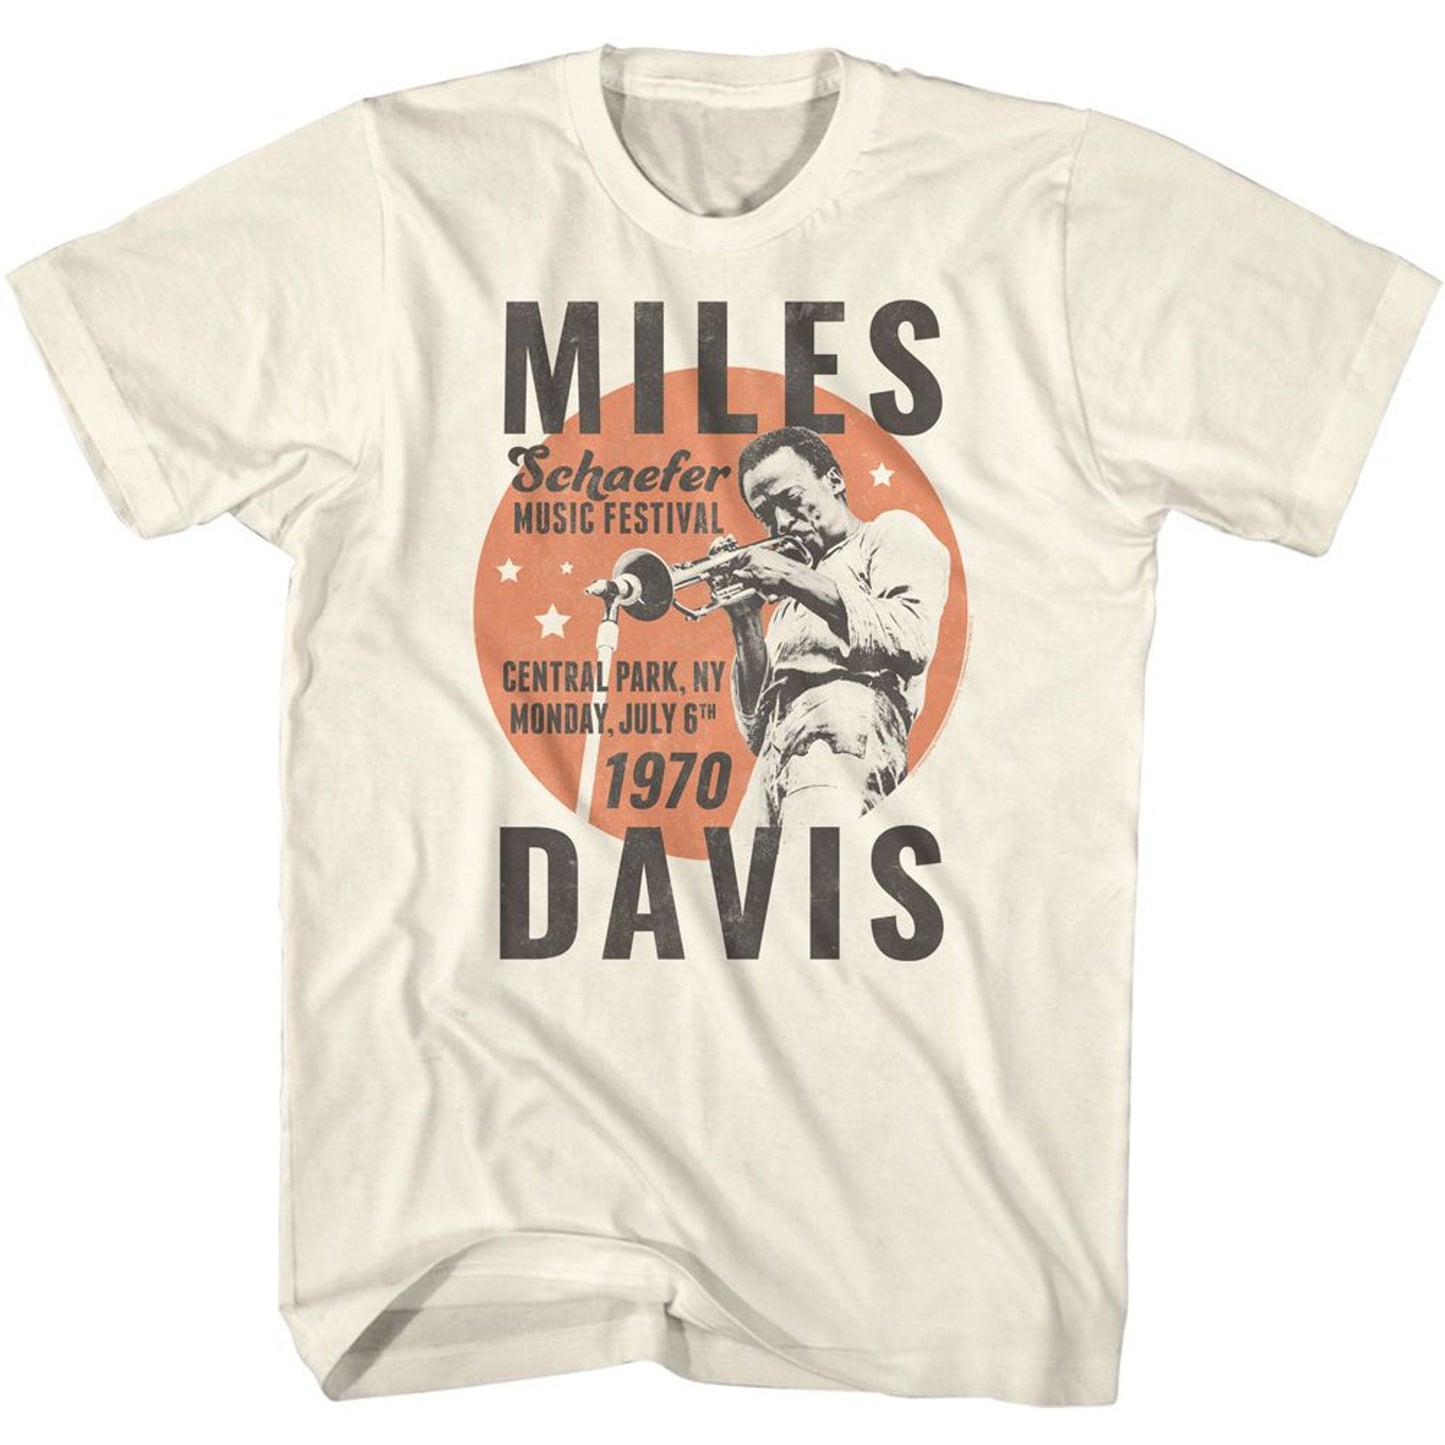 Miles Davis Schaefer Music Festival 1970 T-Shirt